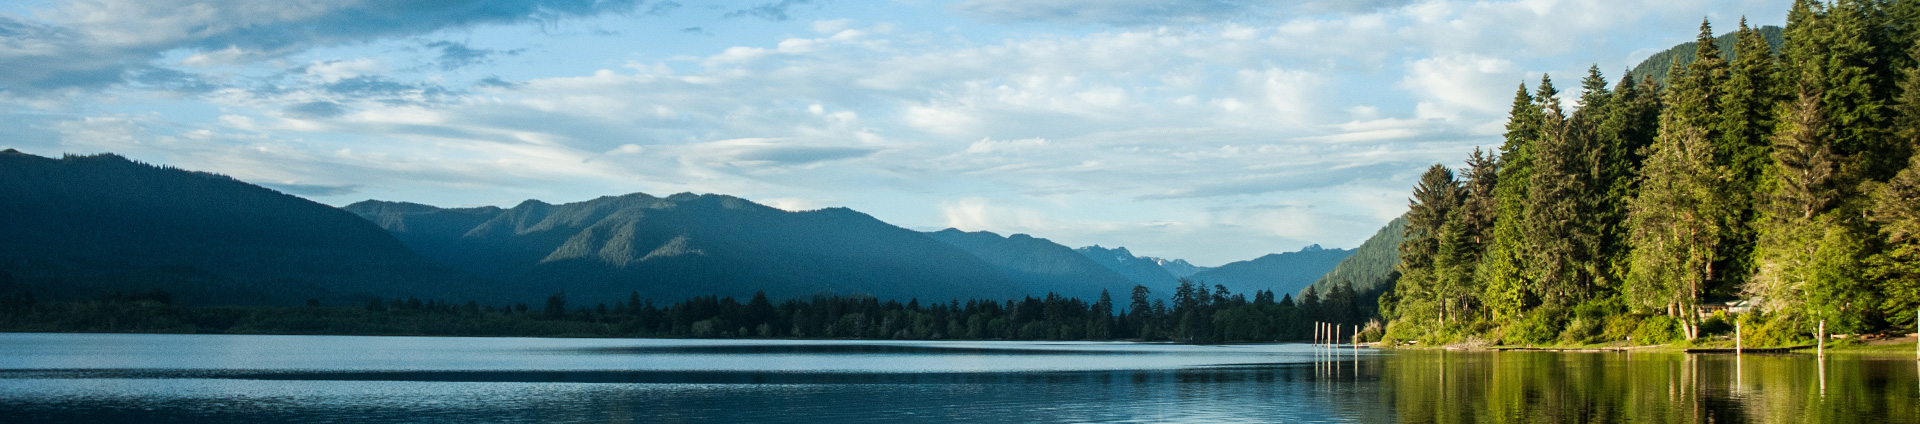 imagen de cabecera del lago Quinault, en calma, cielo azul